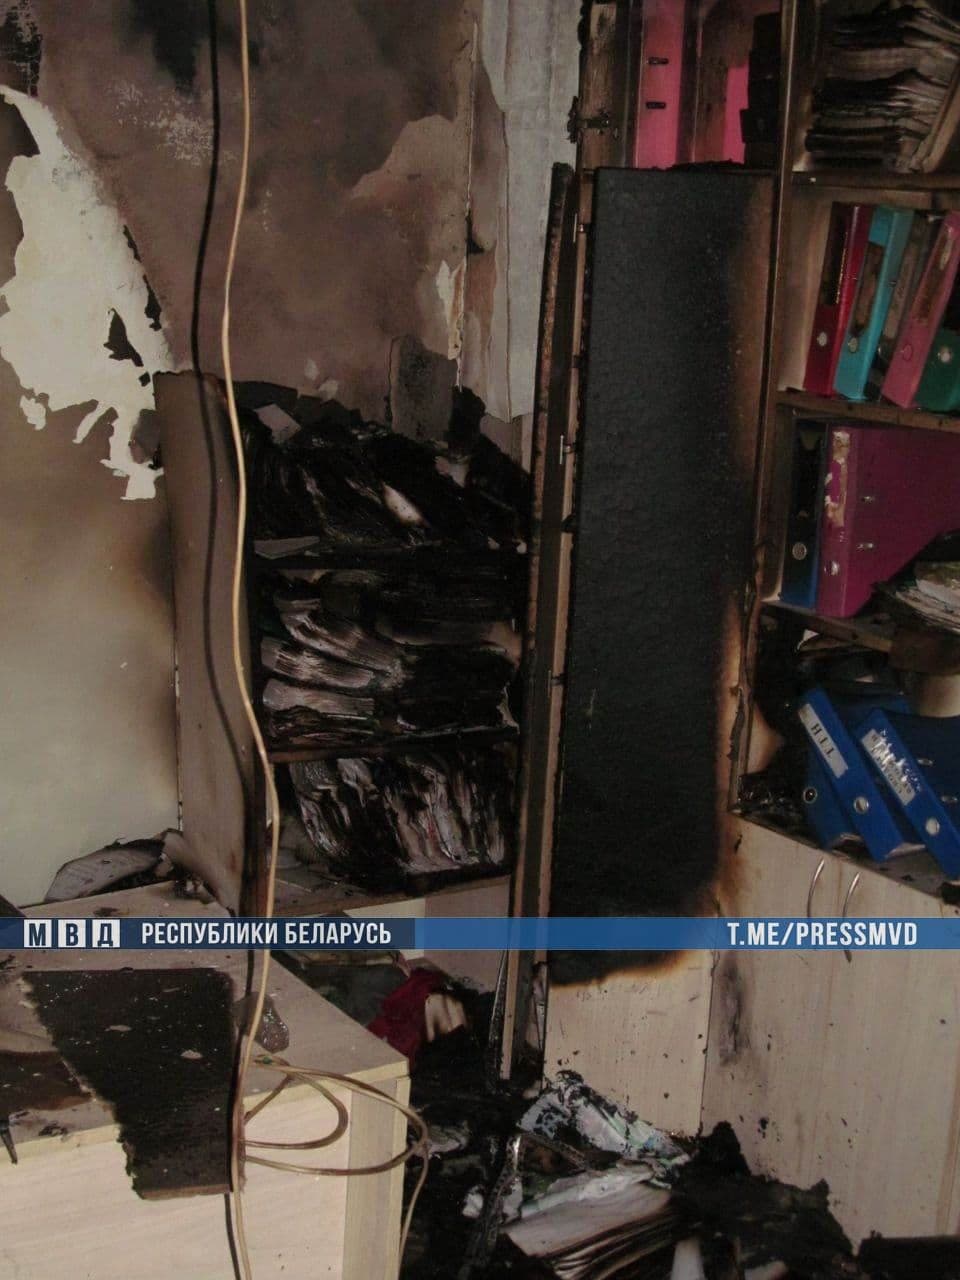 МВД прокомментировало пожар в помещении товарищества собственников